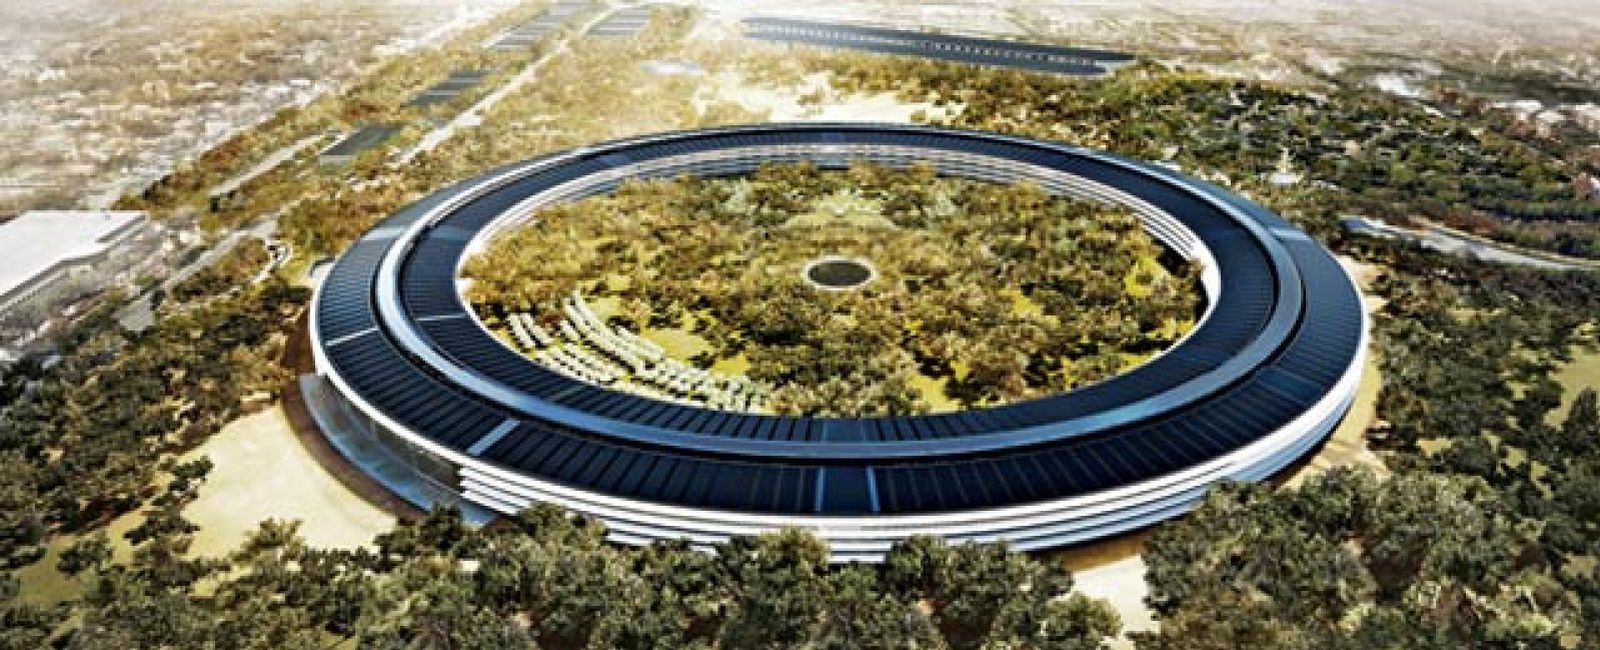 Foto: La nueva -y megalómana- sede de Apple costará casi 4.000 millones de euros